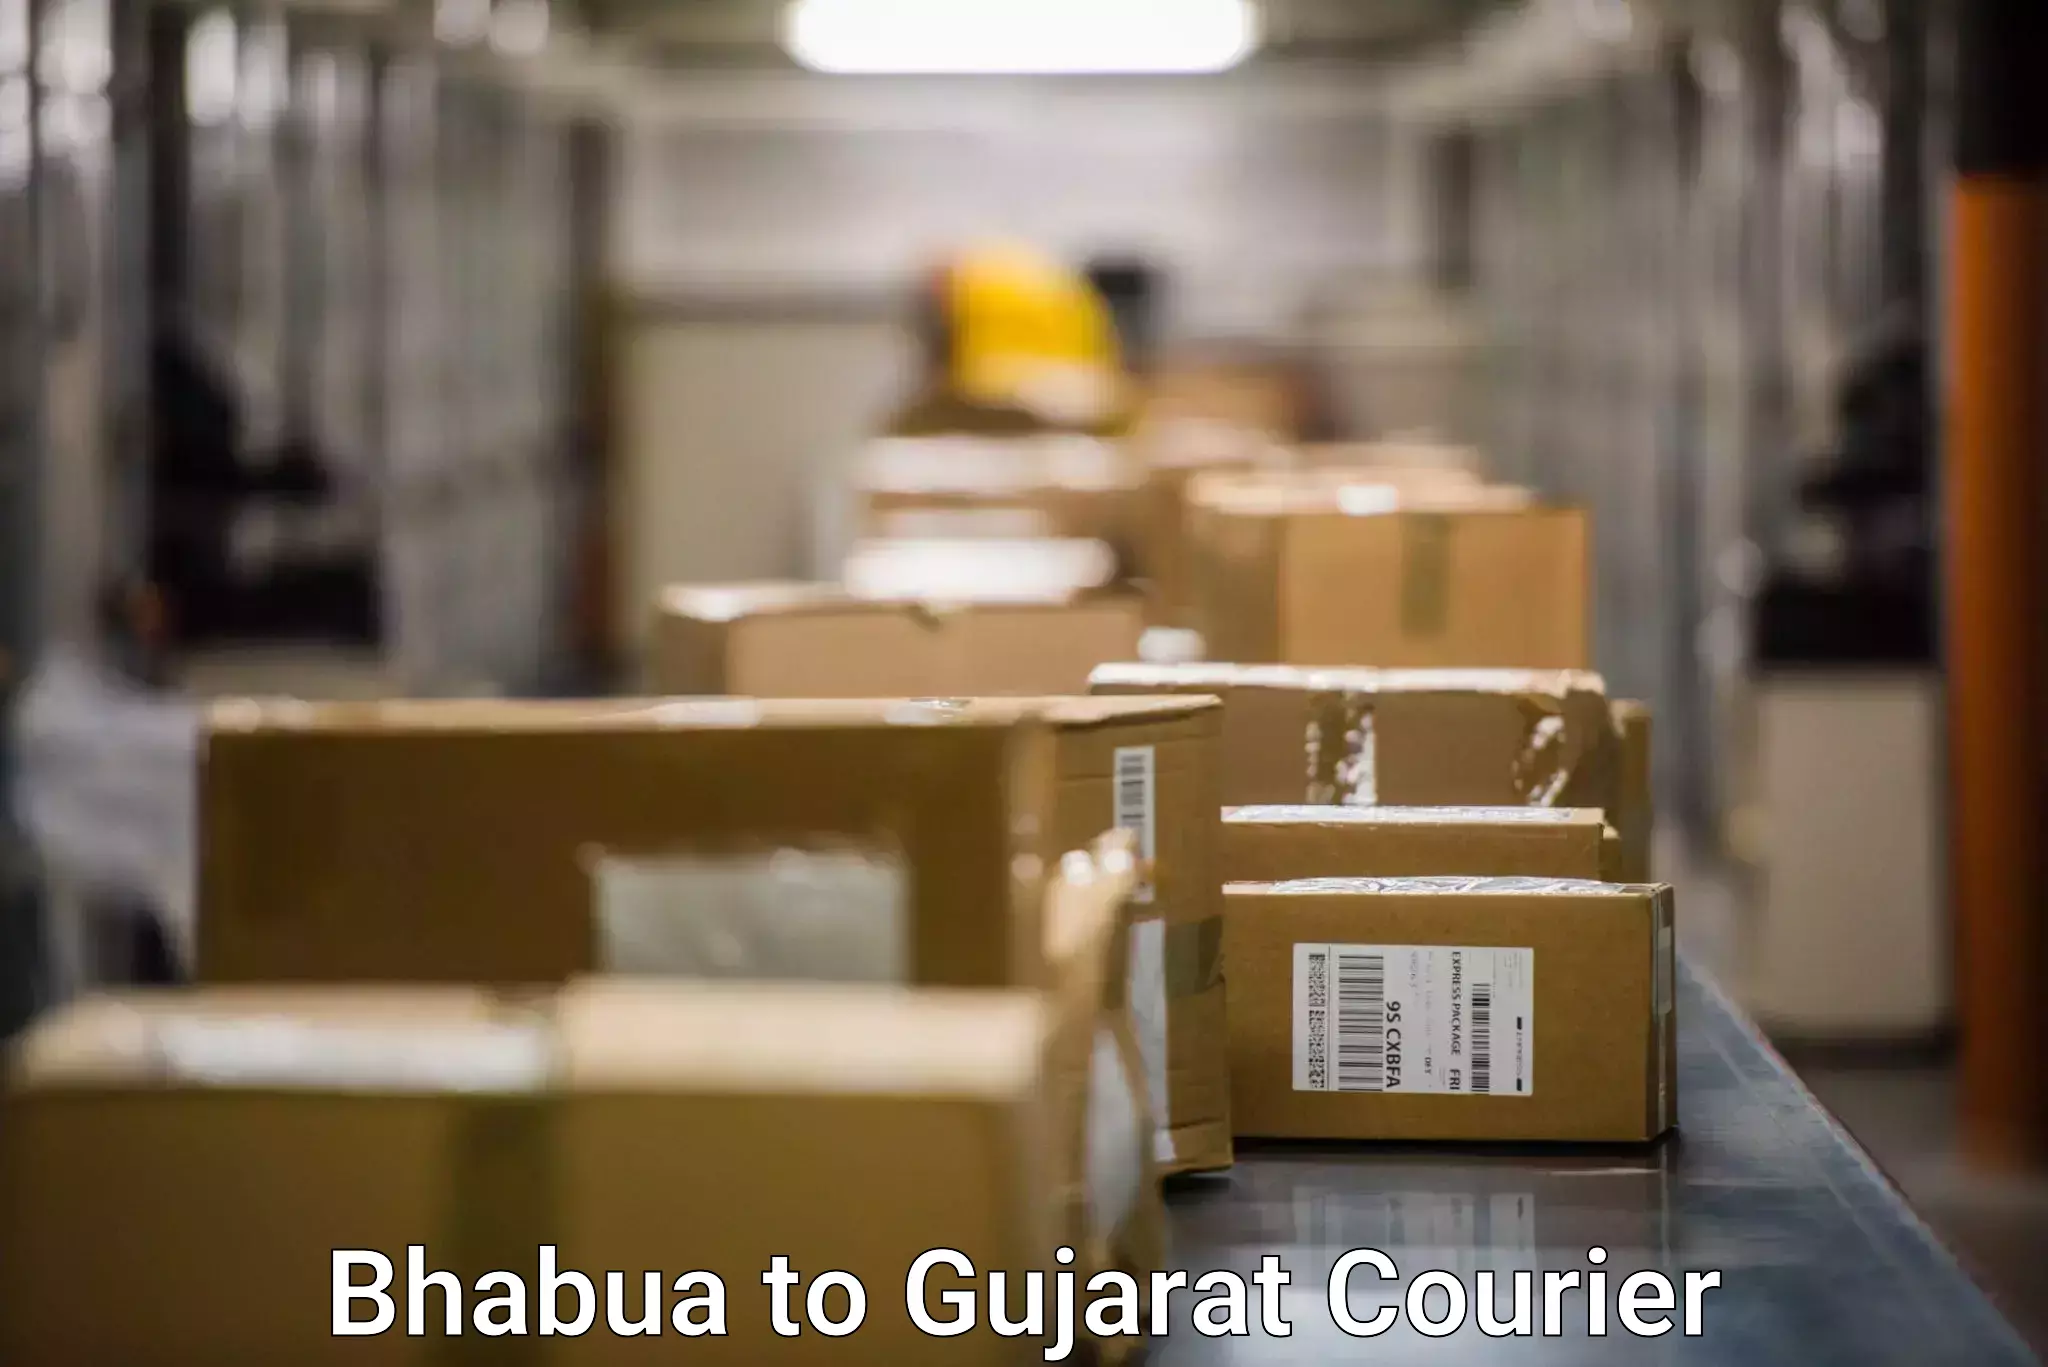 Express logistics providers Bhabua to Dwarka